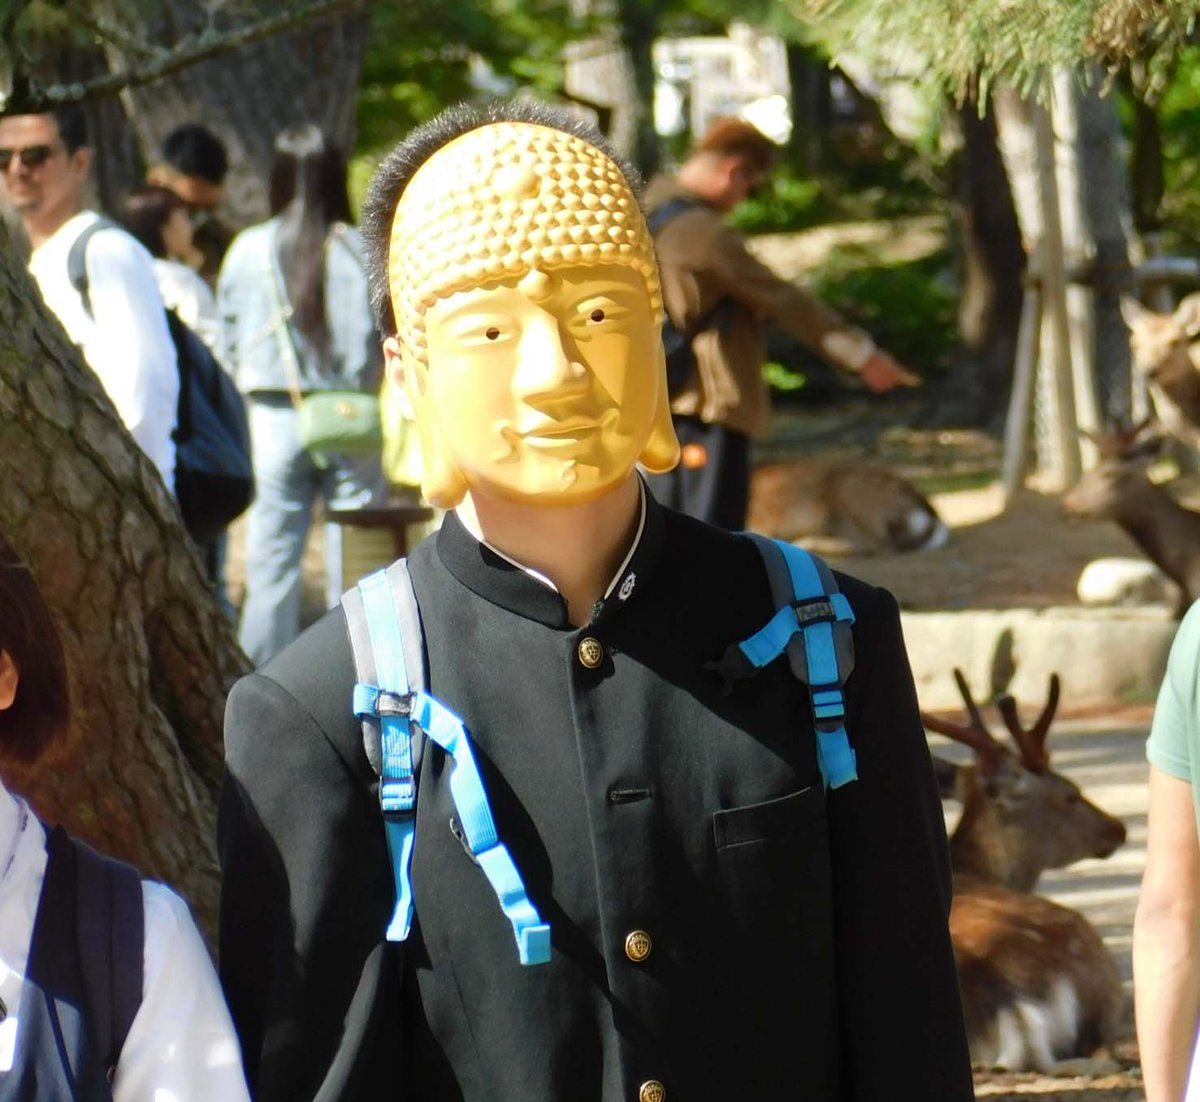 大仏様のお面をかぶった生徒さん。
A student with Great Buddha mask.